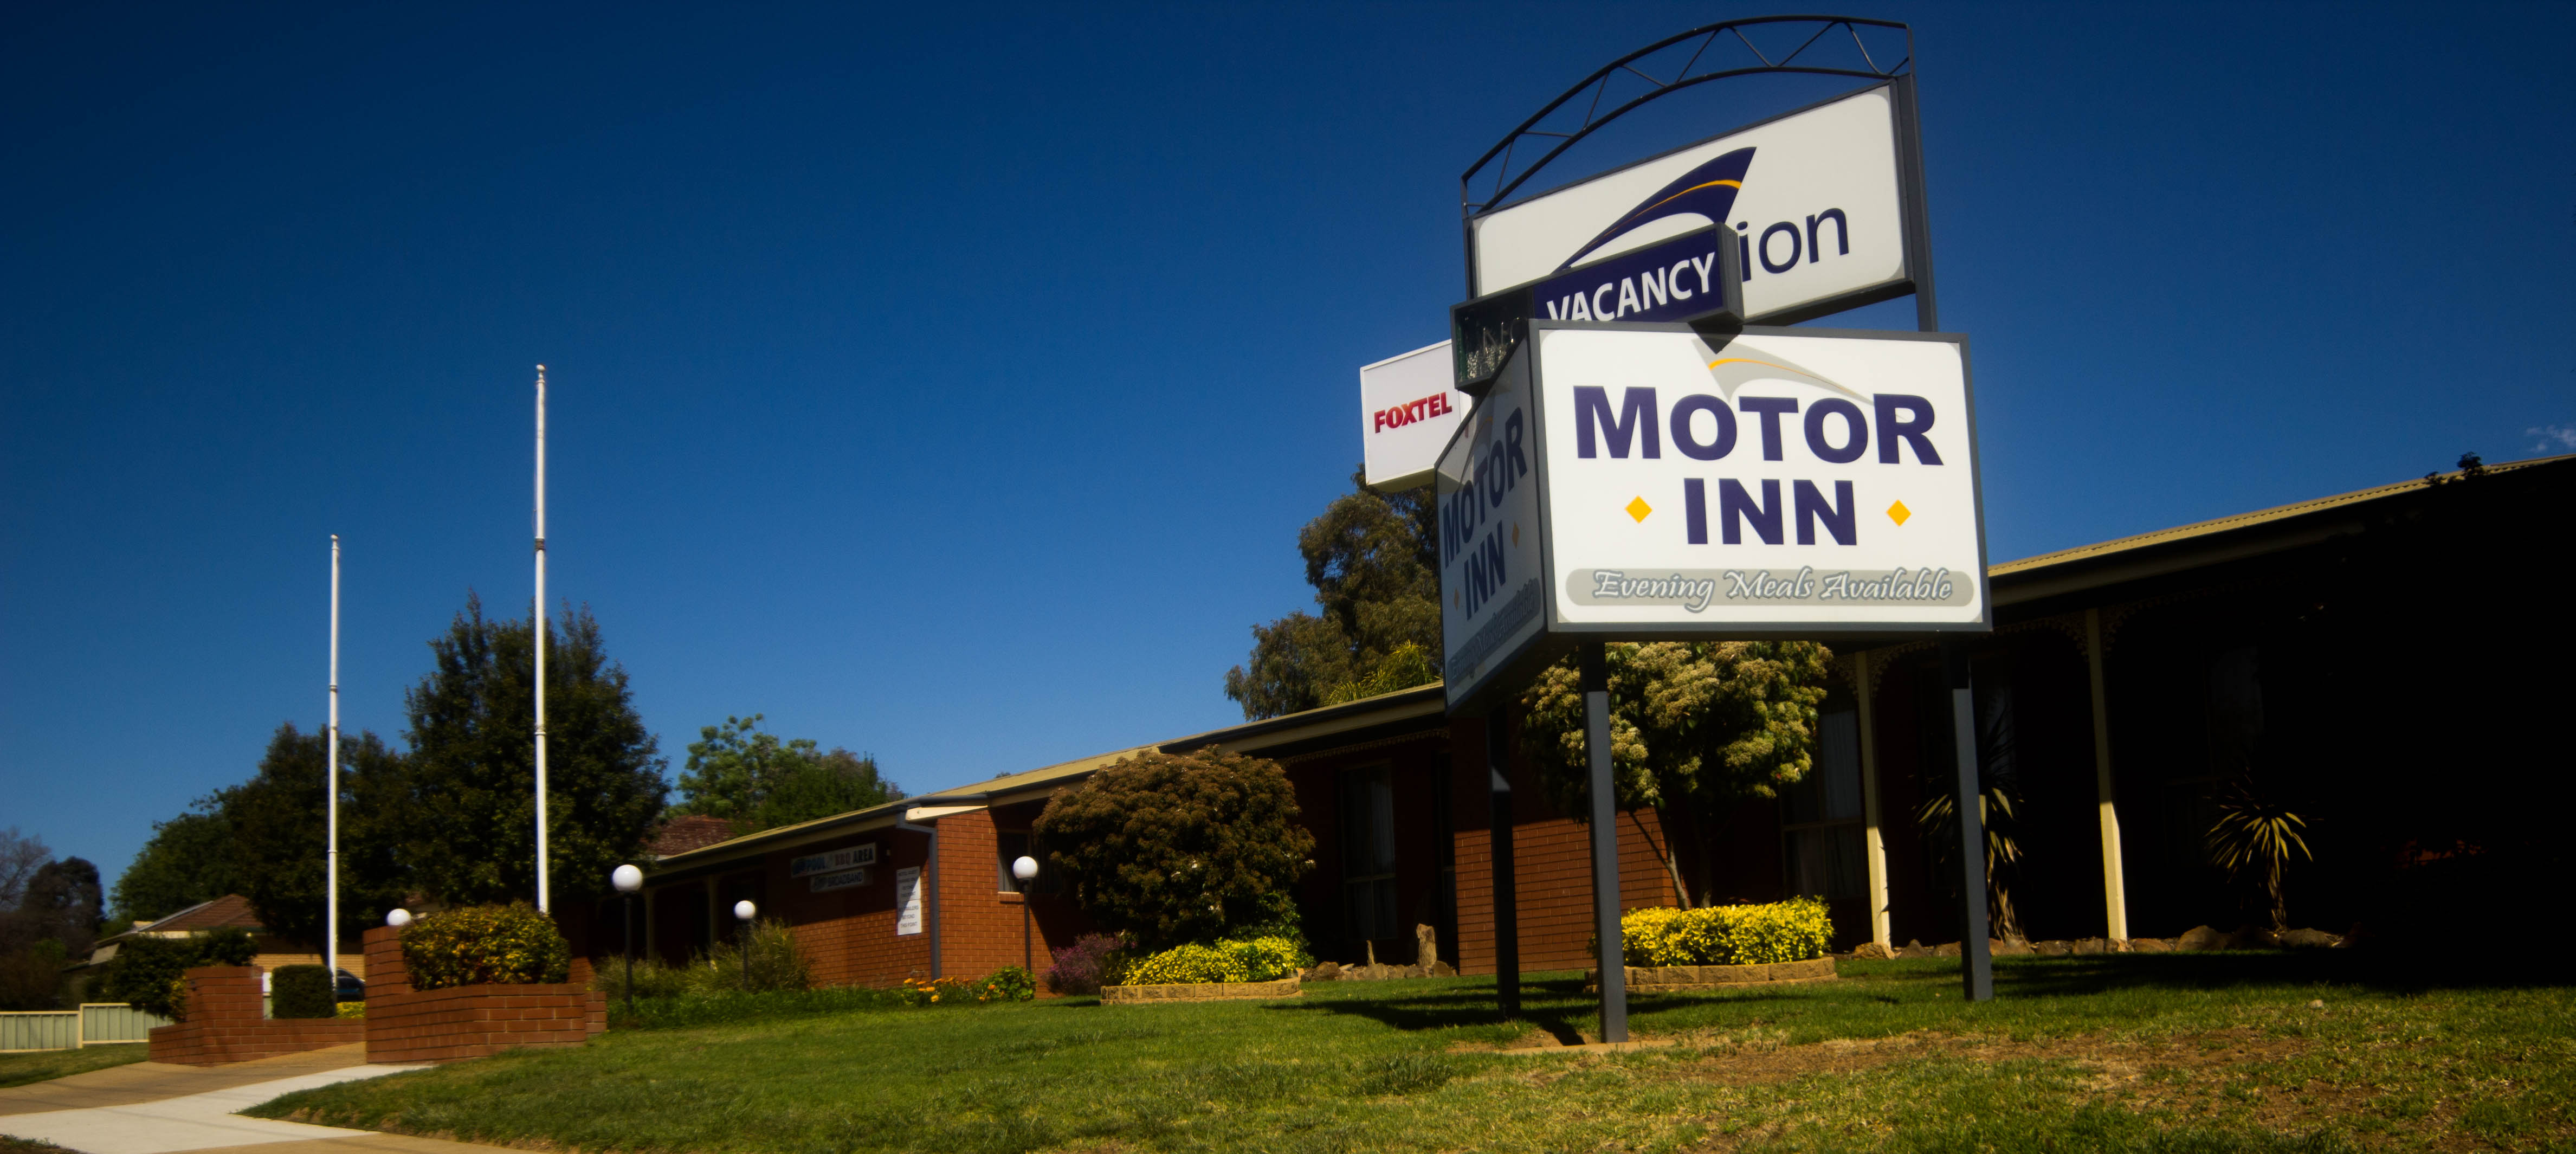 Junction Motor Inn - Australia Accommodation